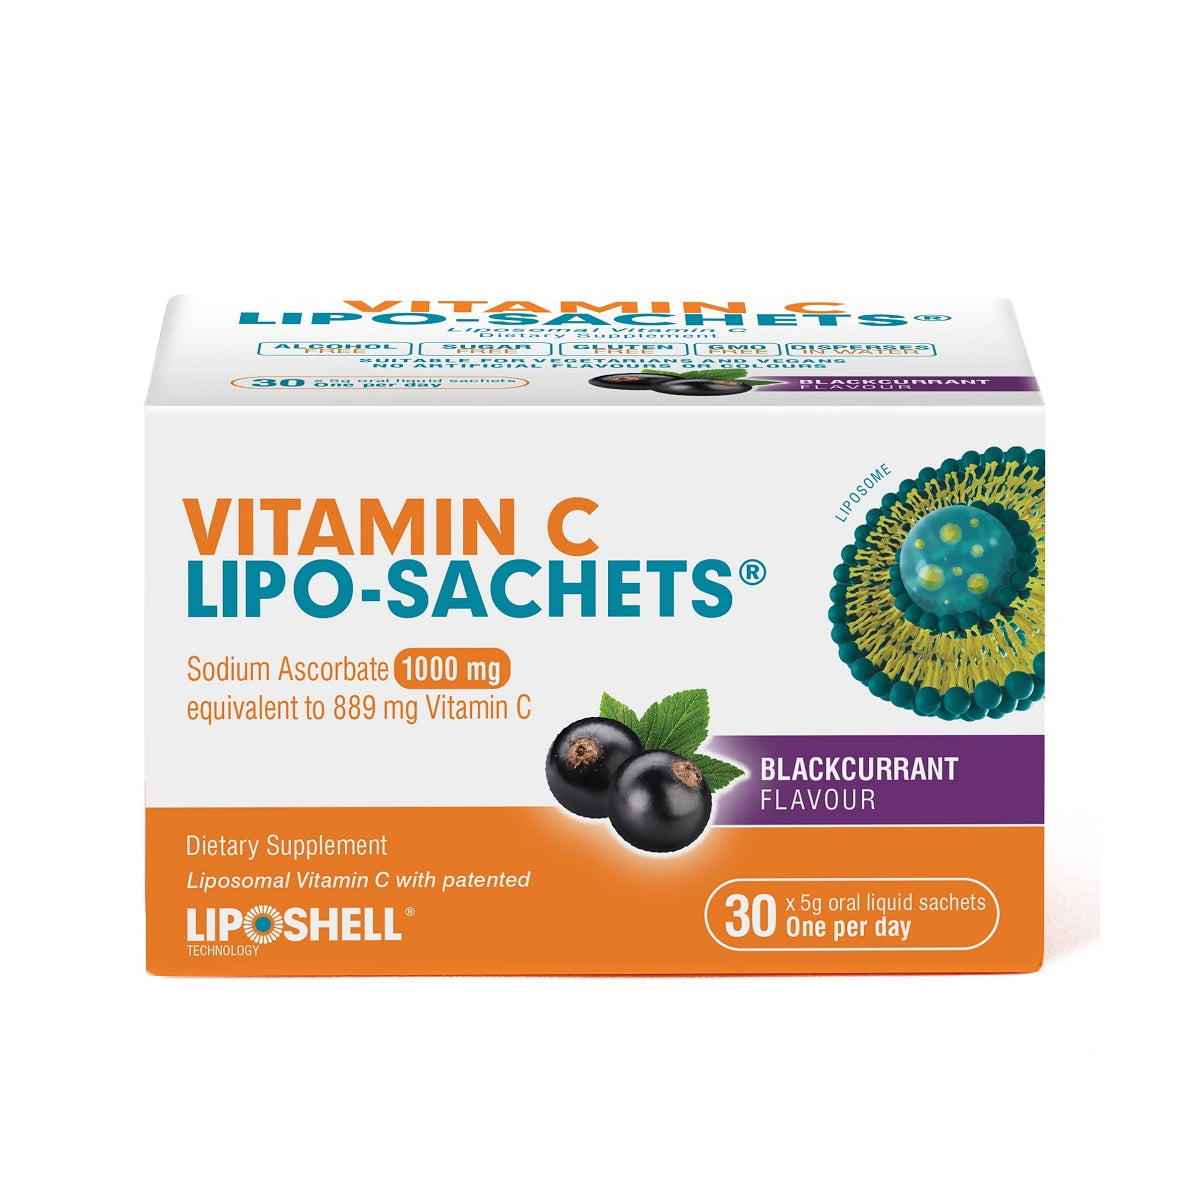 Vitamin C Lipo-Sachets Liposomal Vitamin C - Blackcurrant Flavour